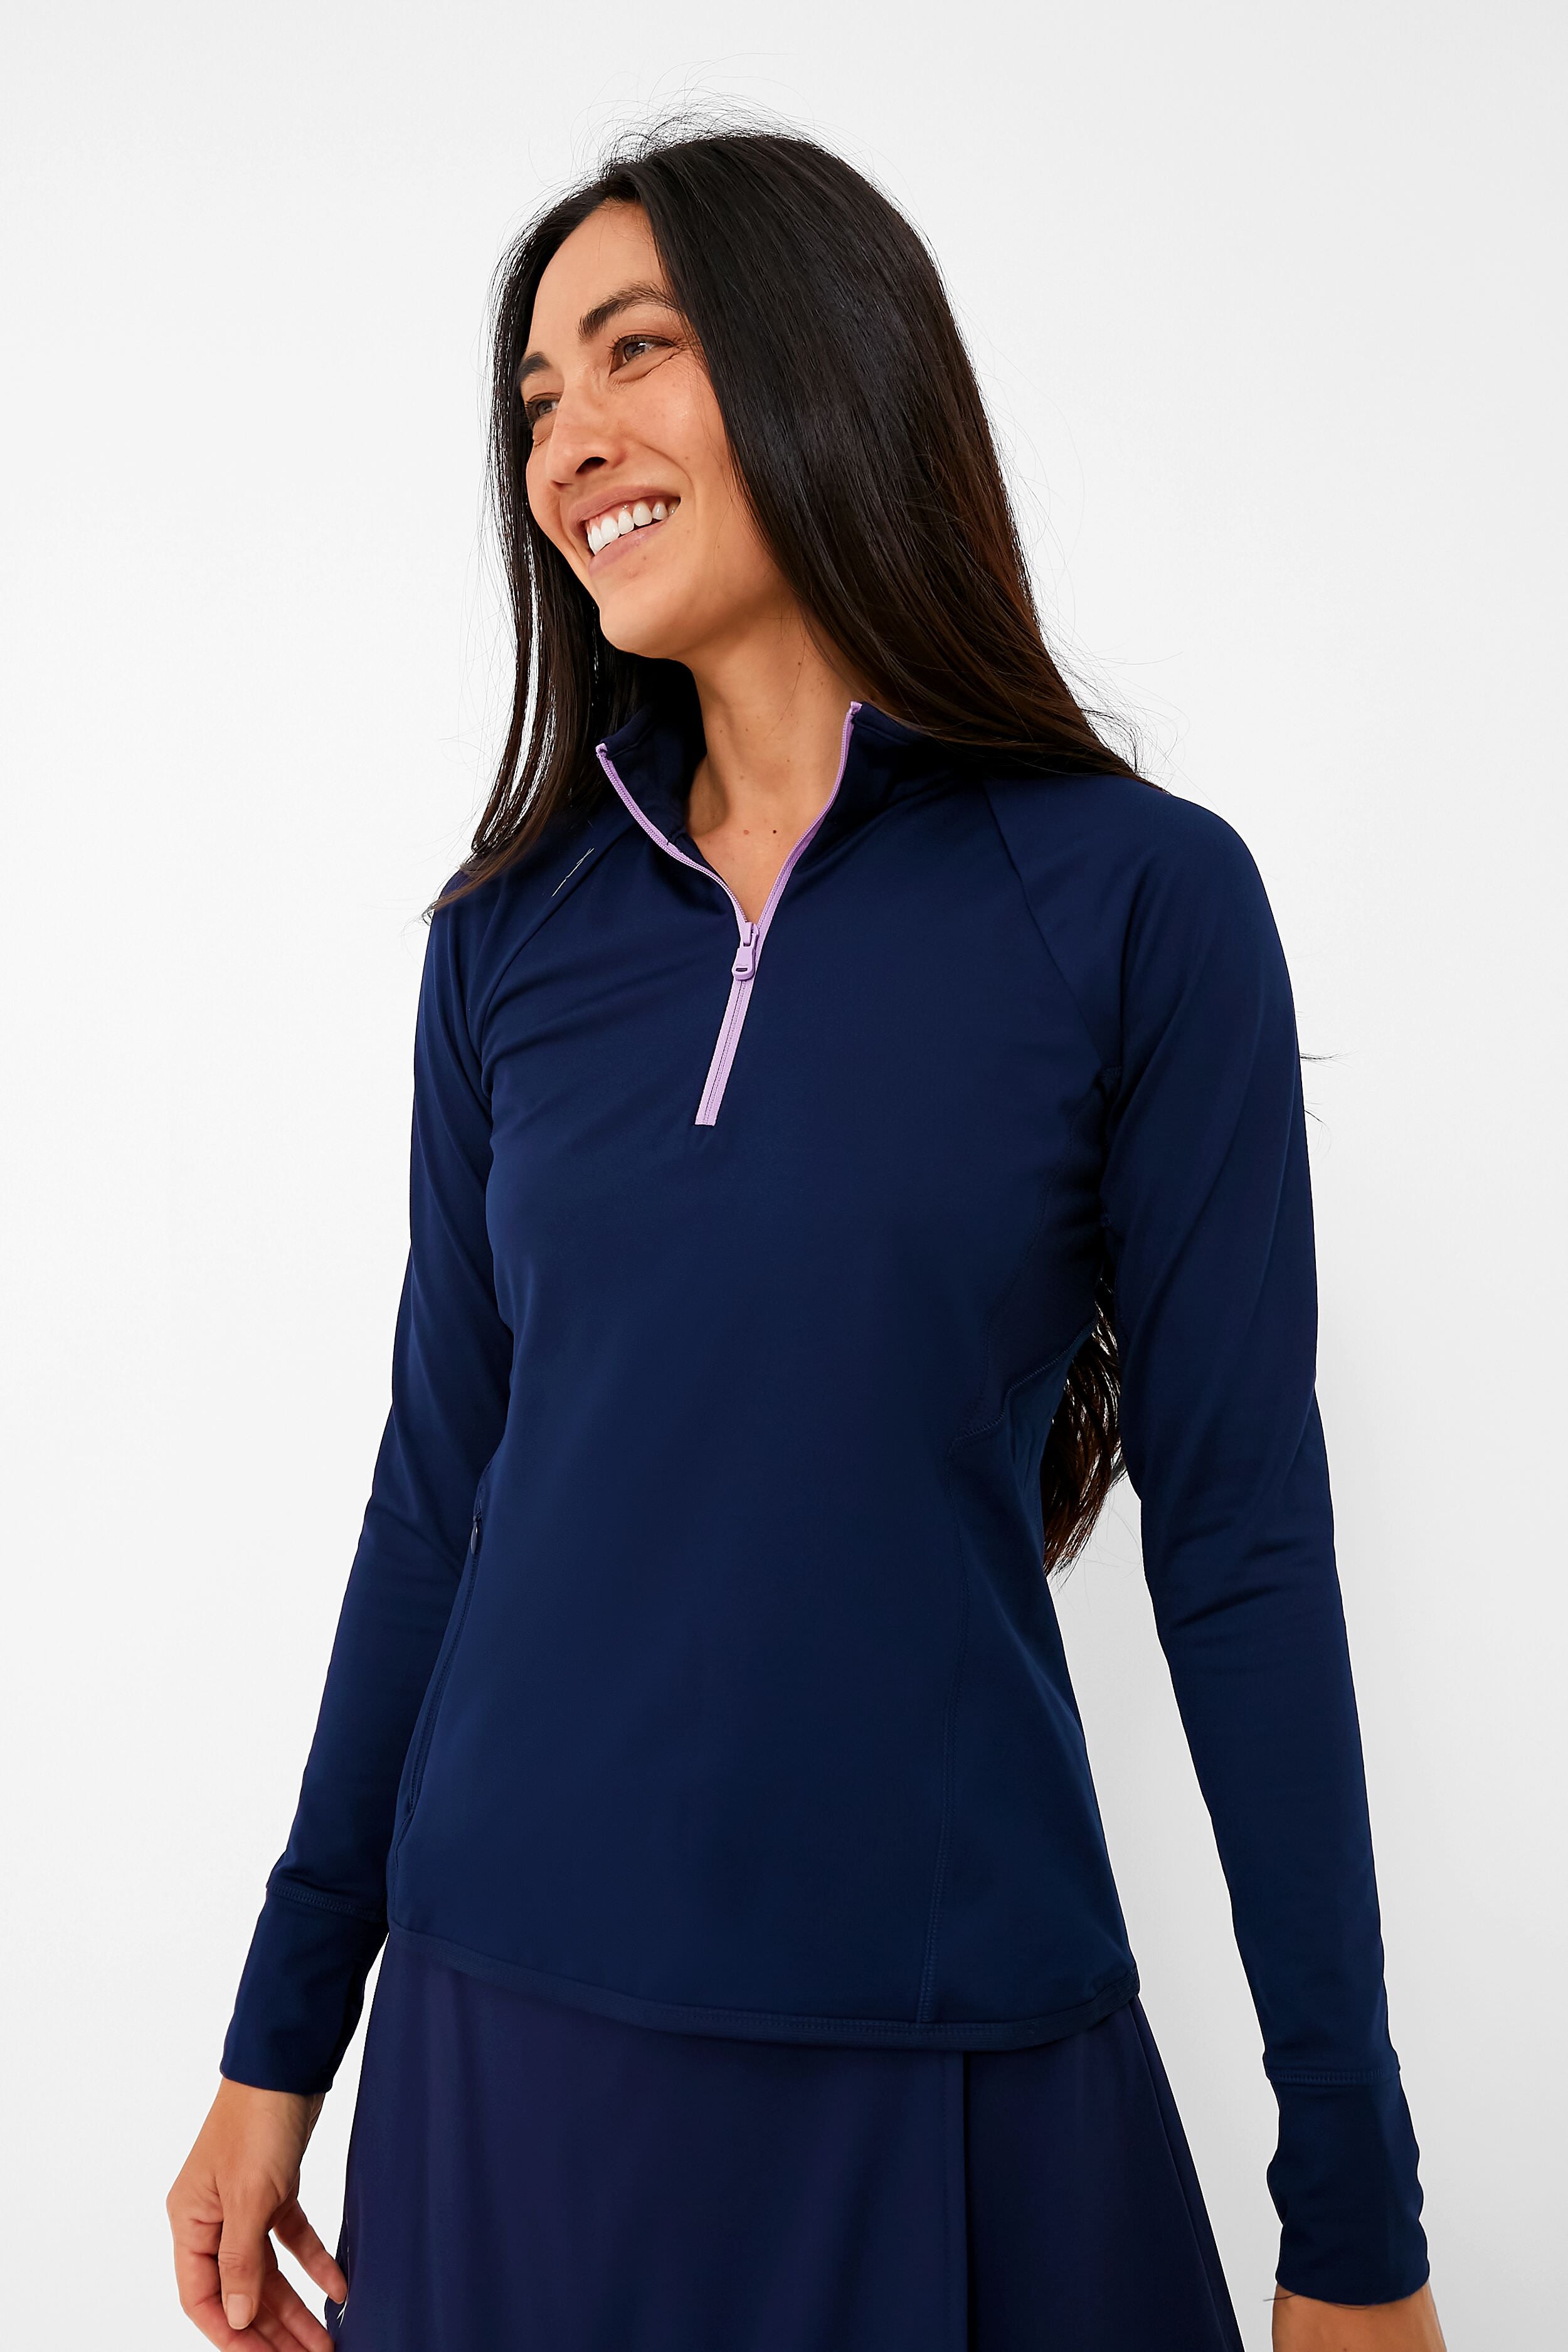 LUXUR Ladies Sweatshirt Long Sleeve Hoodies Zipper Pullover Leisure Hooded  Tops Cardigan Blue XL